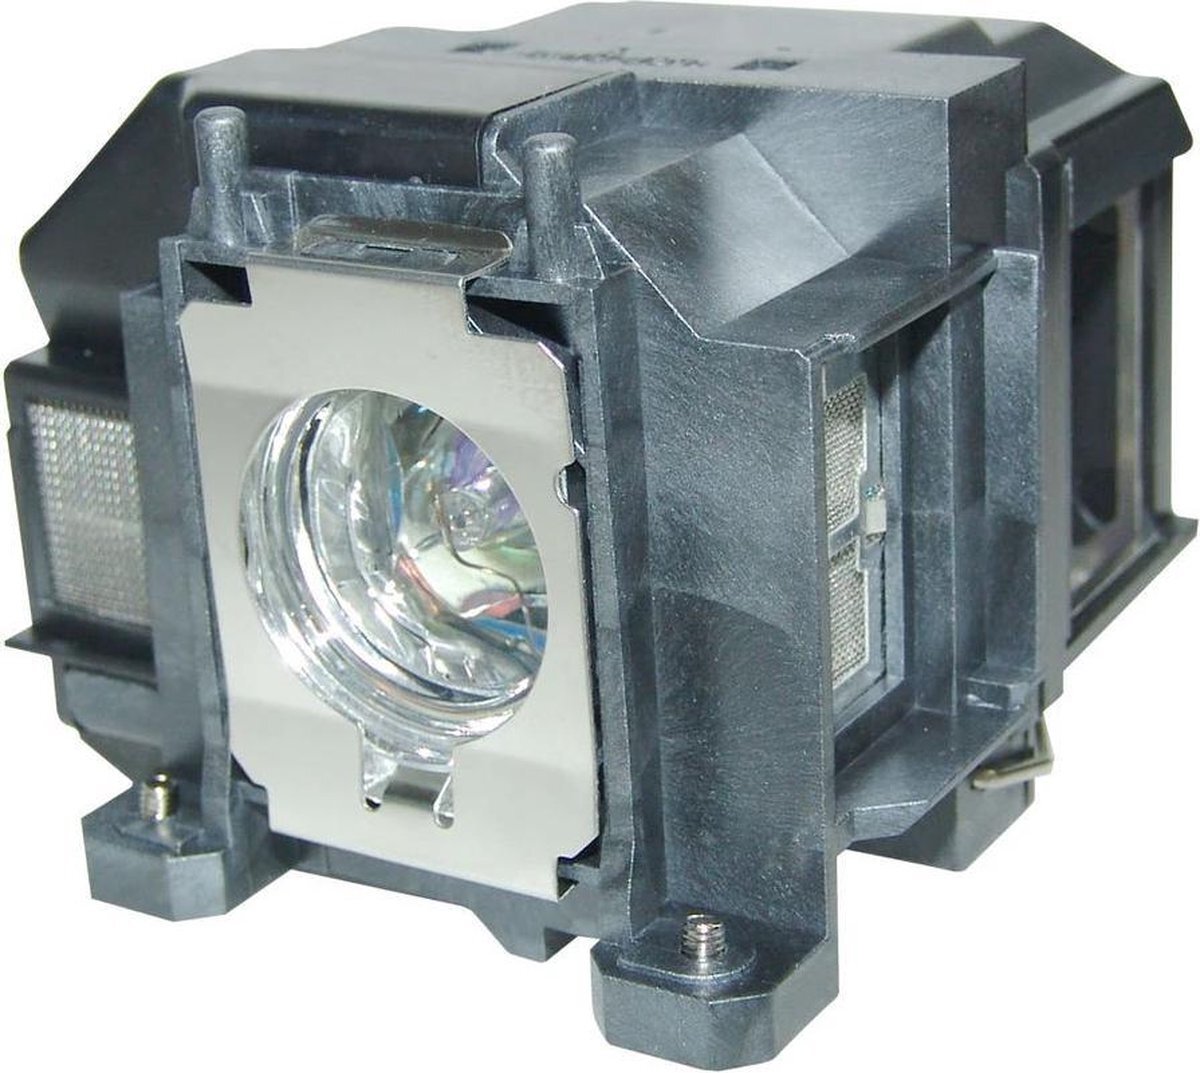 QualityLamp EPSON H434B beamerlamp LP67 / V13H010L67, bevat originele P-VIP lamp. Prestaties gelijk aan origineel.